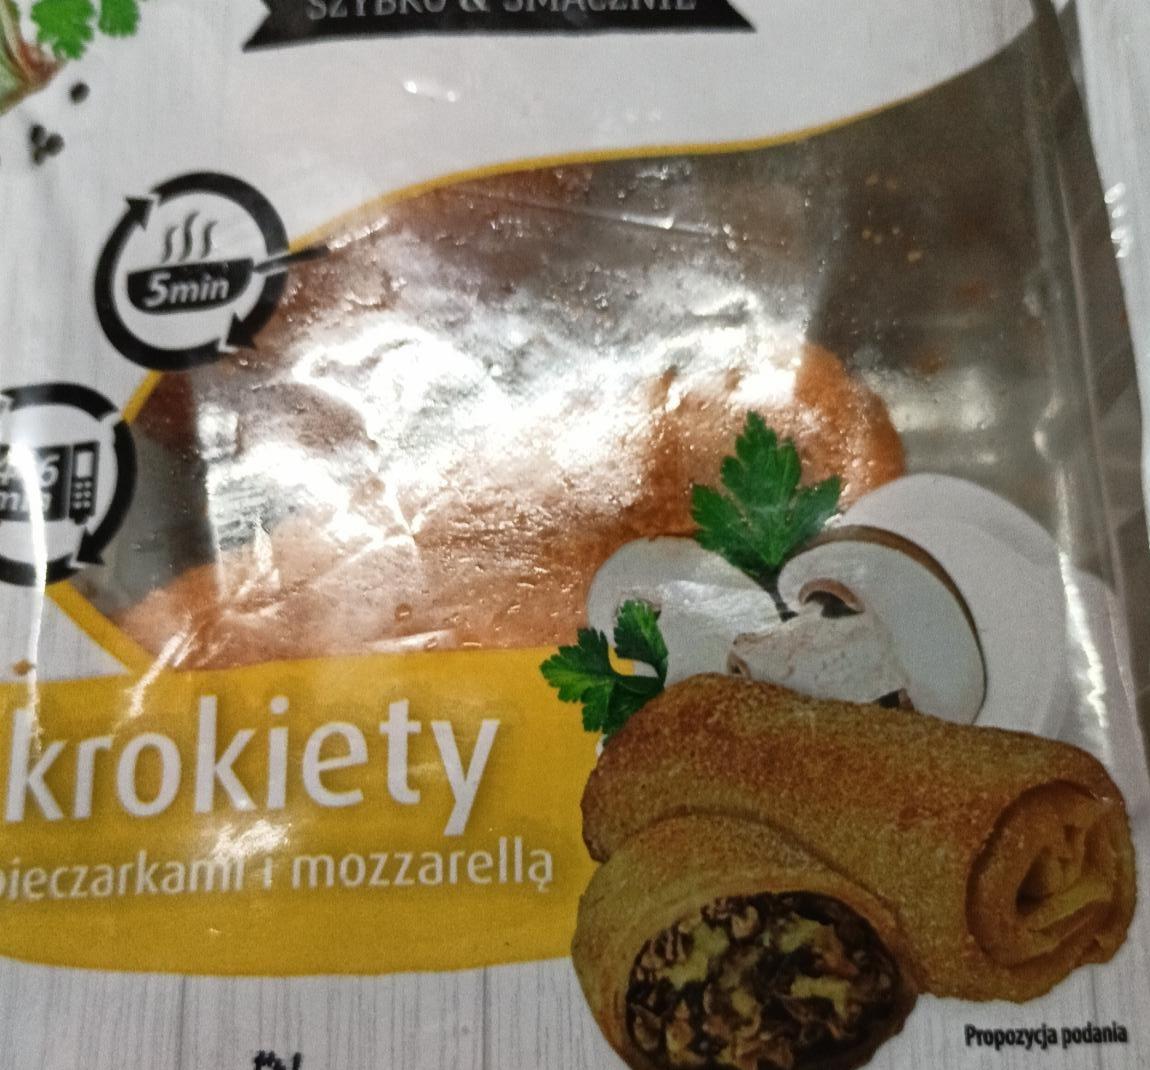 Zdjęcia - Krokiety z pieczarkami i mozzarellą SmakMAK